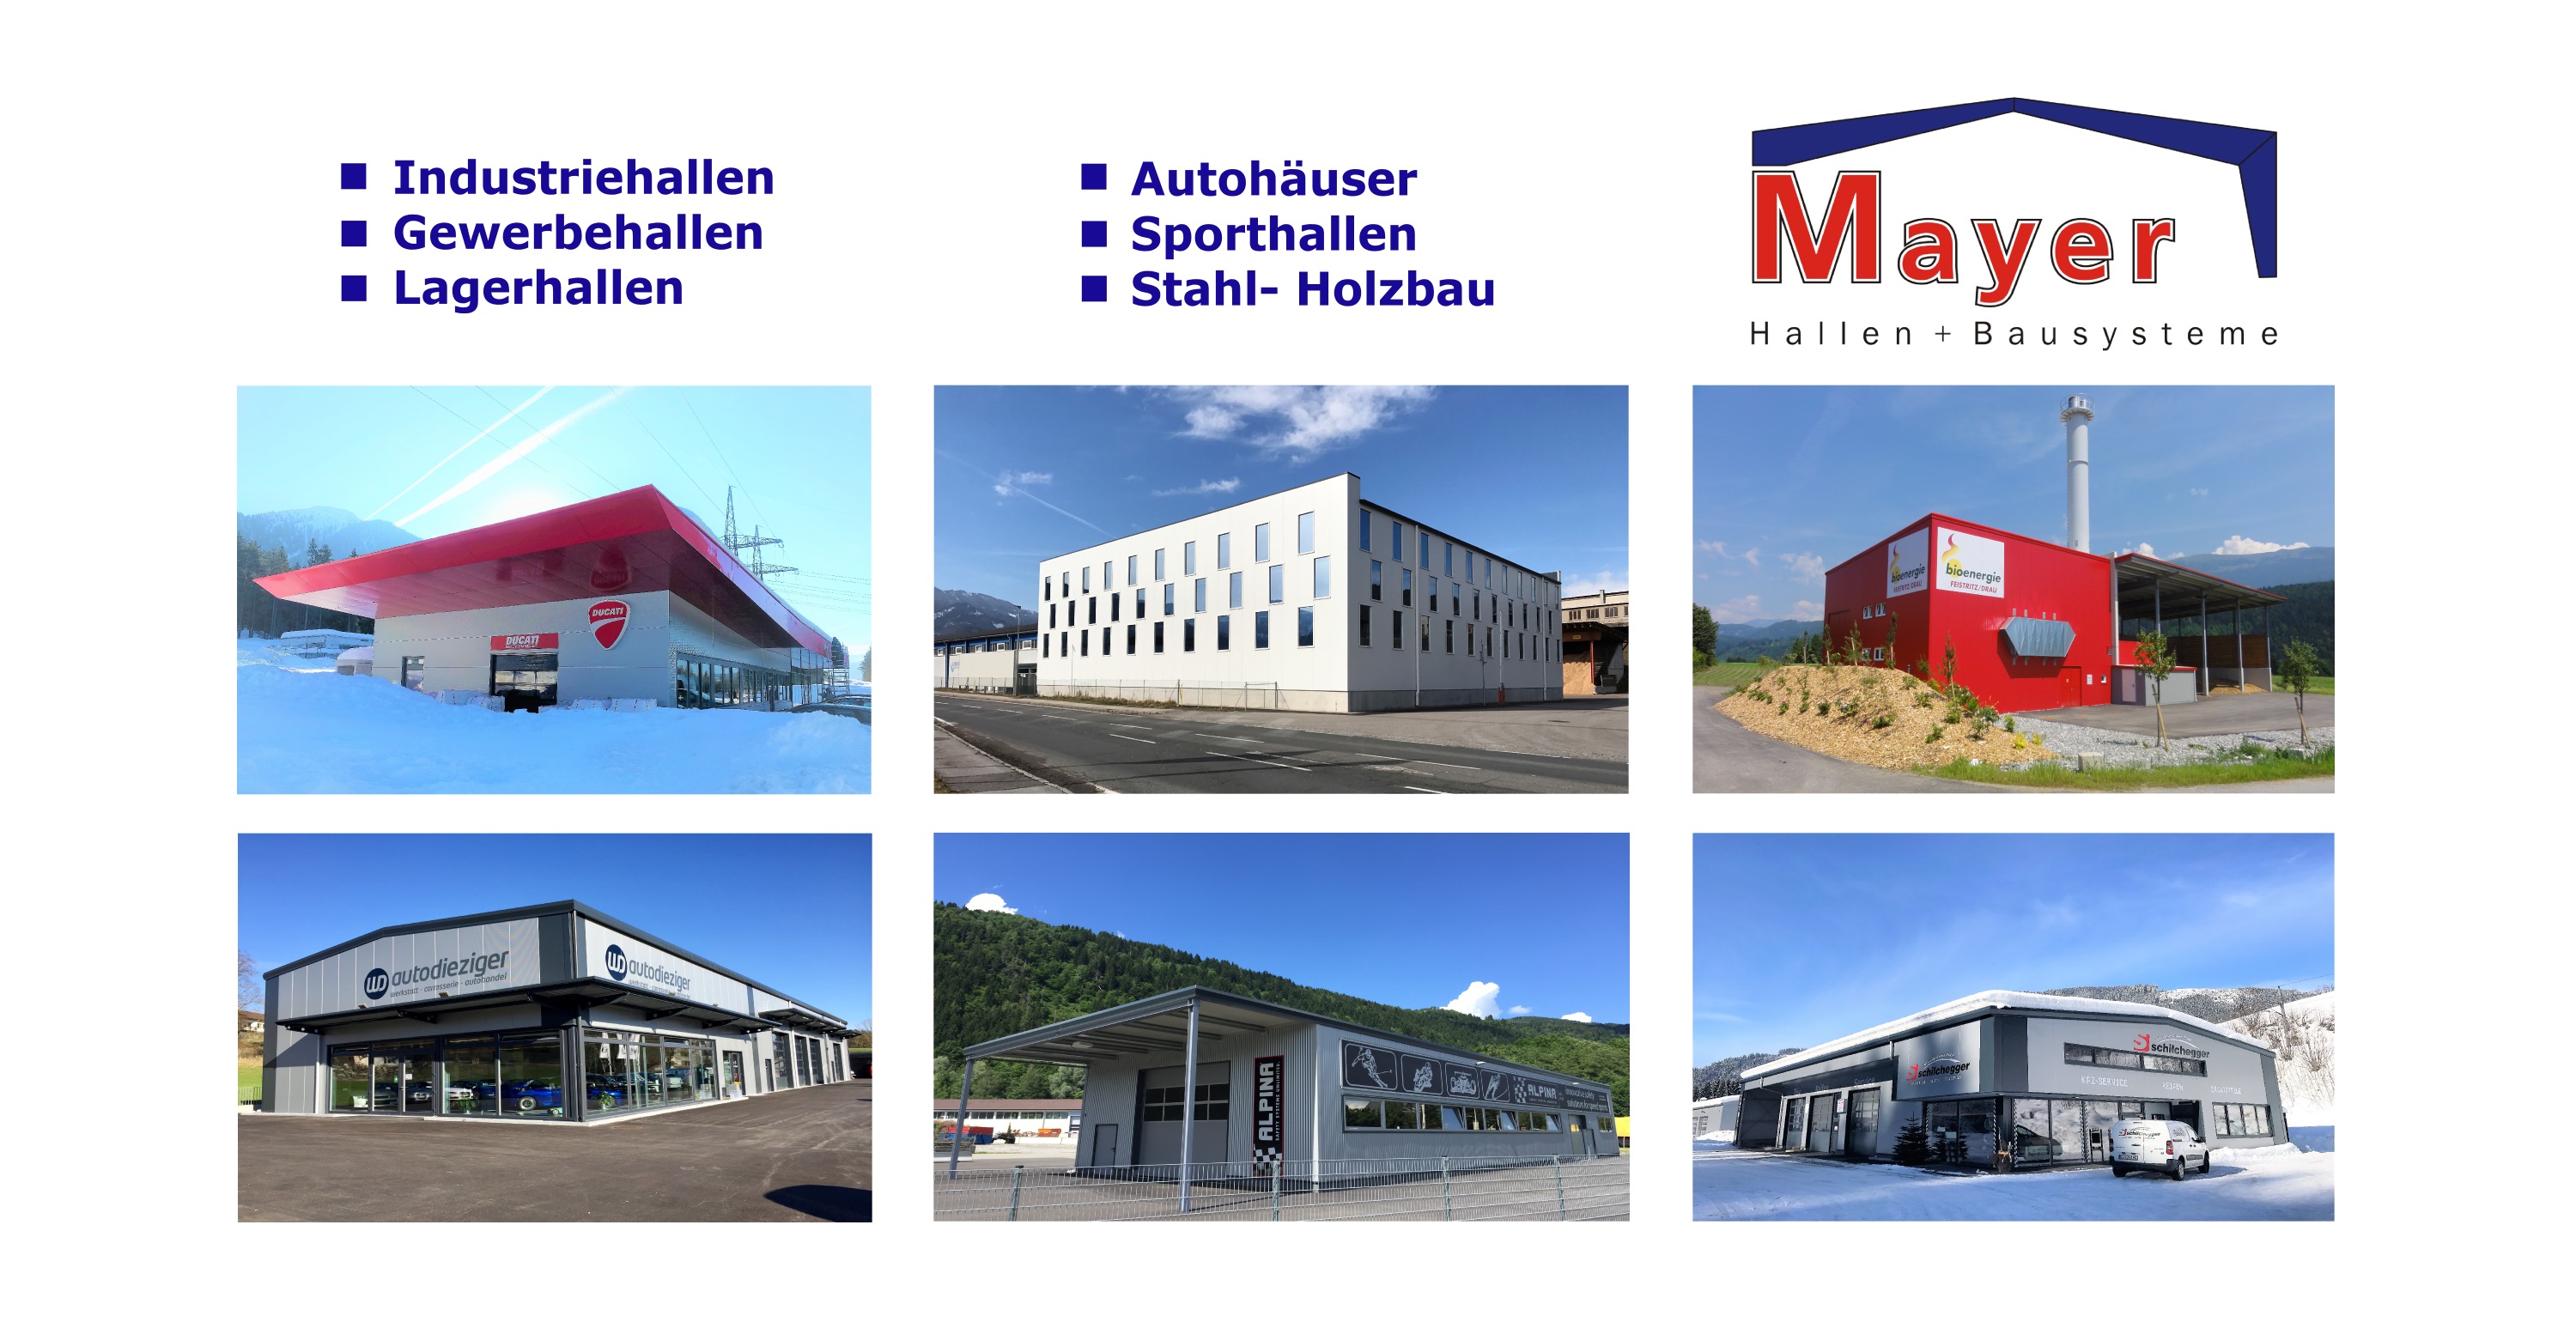 Mayer Hallen Bausysteme